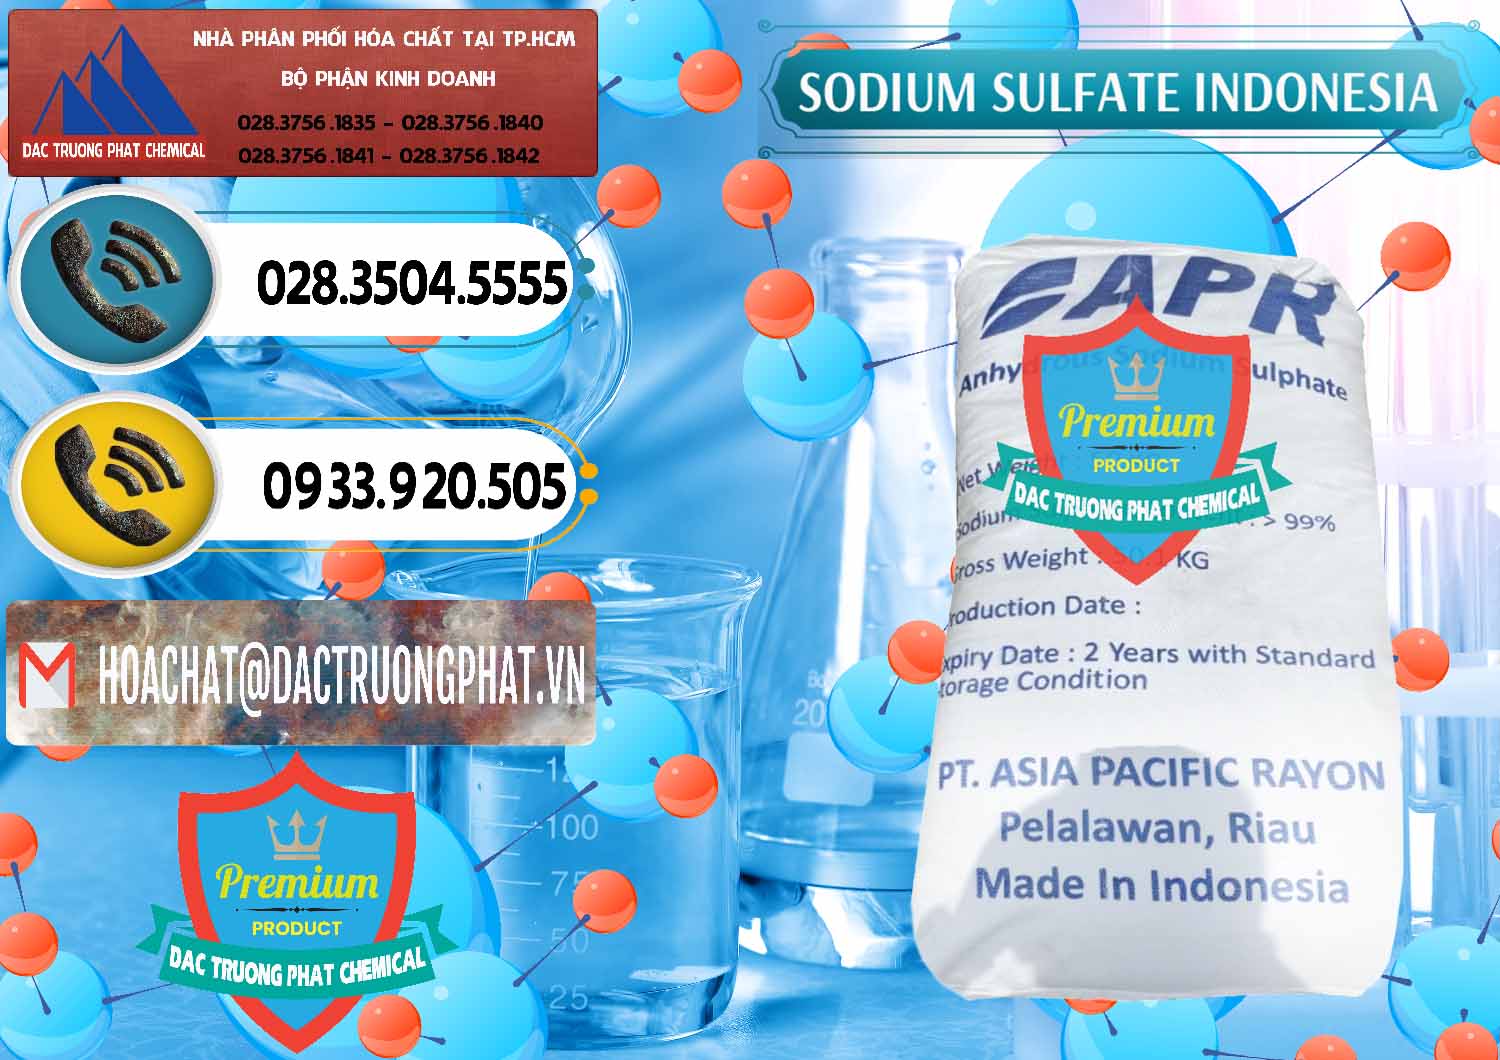 Cty chuyên bán và cung ứng Sodium Sulphate - Muối Sunfat Na2SO4 APR Indonesia - 0460 - Công ty chuyên bán và cung cấp hóa chất tại TP.HCM - hoachatdetnhuom.vn